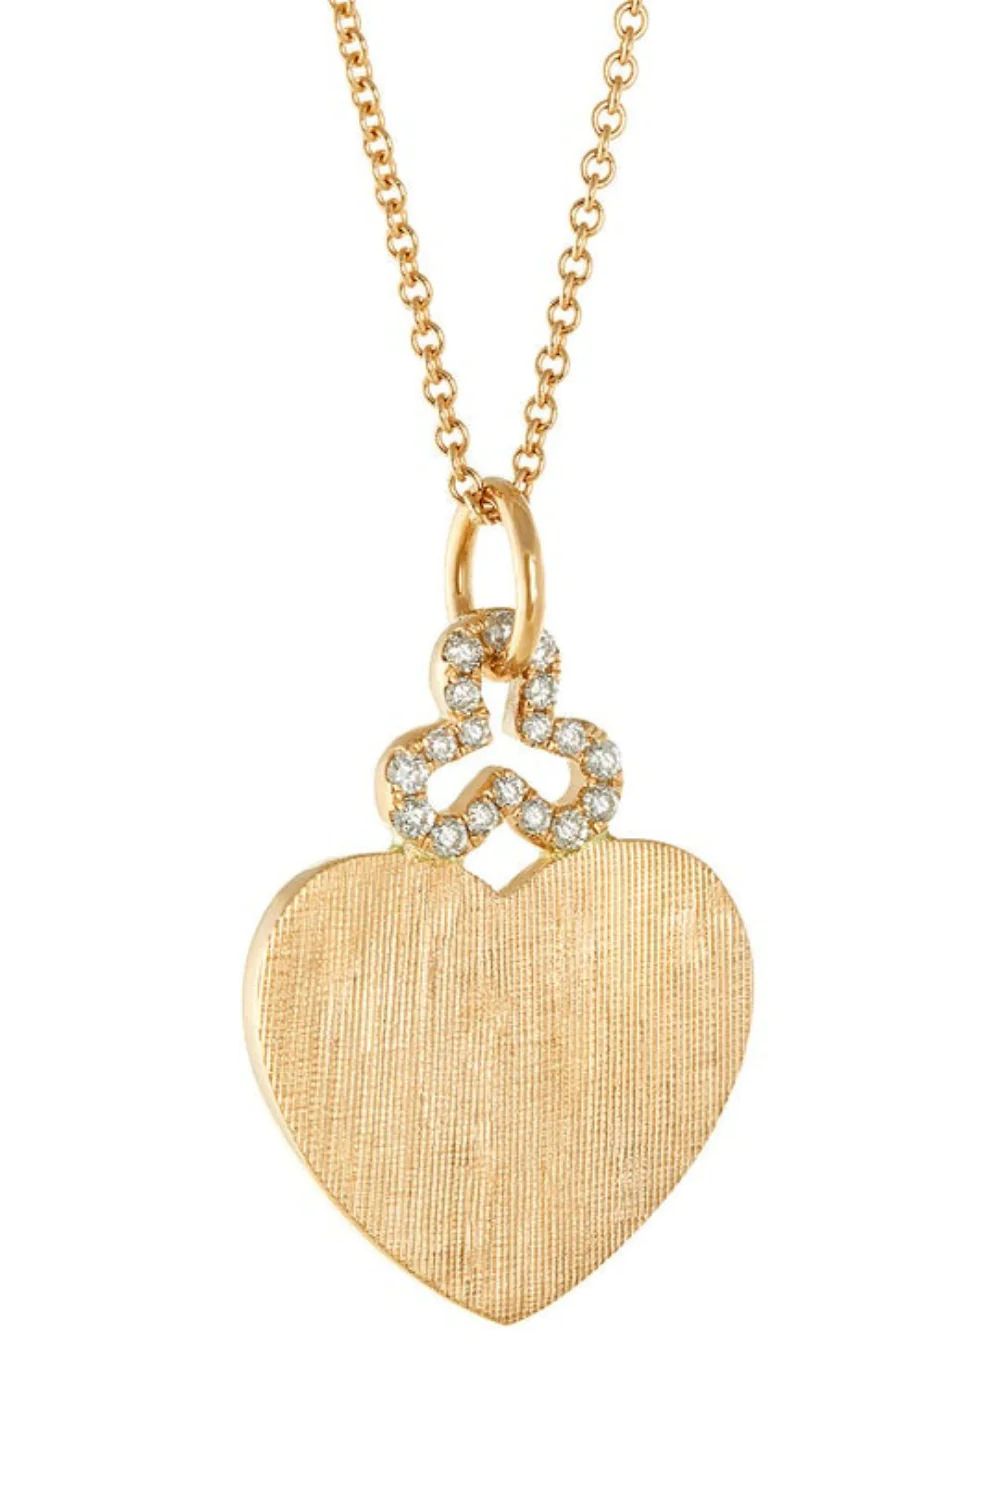 Diamond Heart Charm in 18k Gold | Florentine | Devon Woodhill